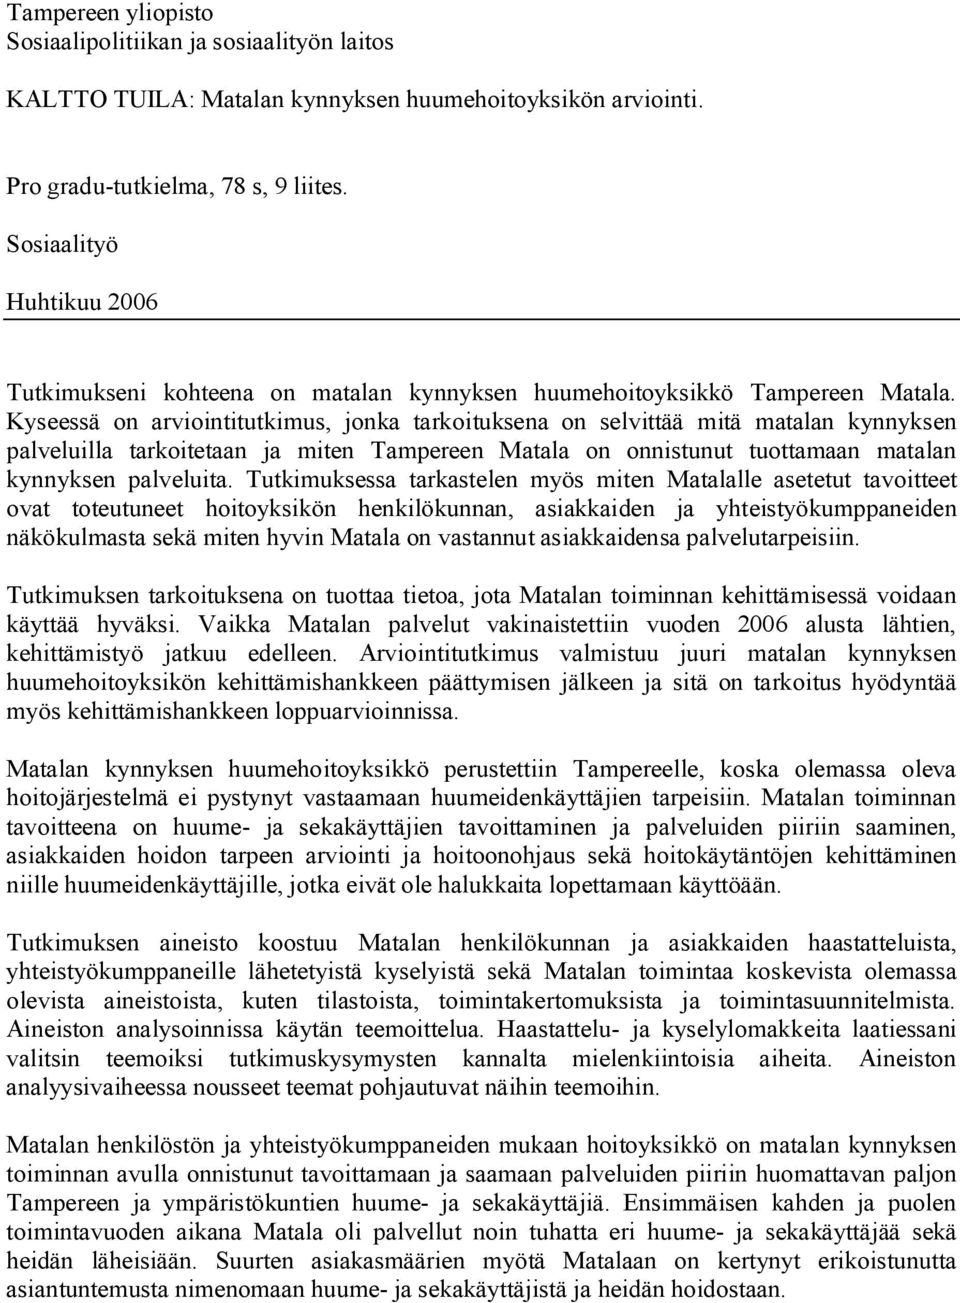 Kyseessä on arviointitutkimus, jonka tarkoituksena on selvittää mitä matalan kynnyksen palveluilla tarkoitetaan ja miten Tampereen Matala on onnistunut tuottamaan matalan kynnyksen palveluita.